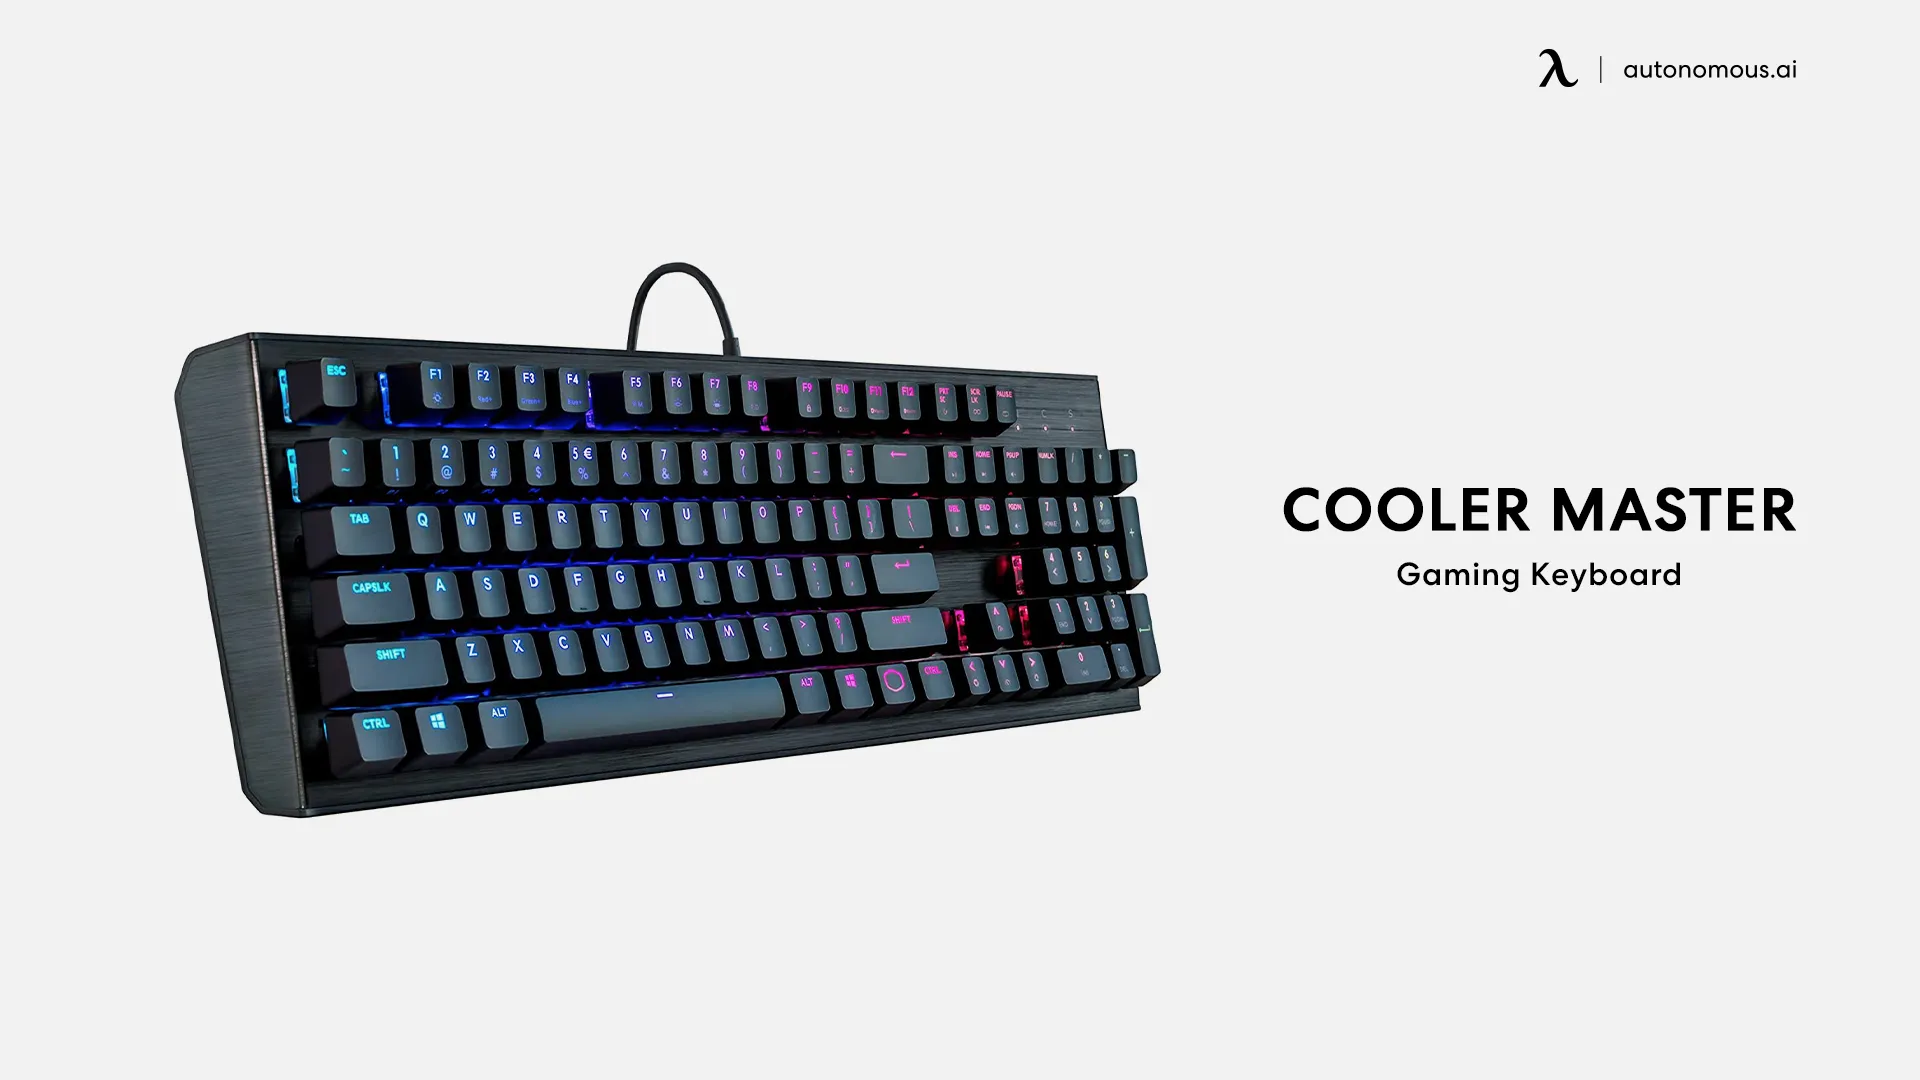 Cooler Master Gaming Keyboard